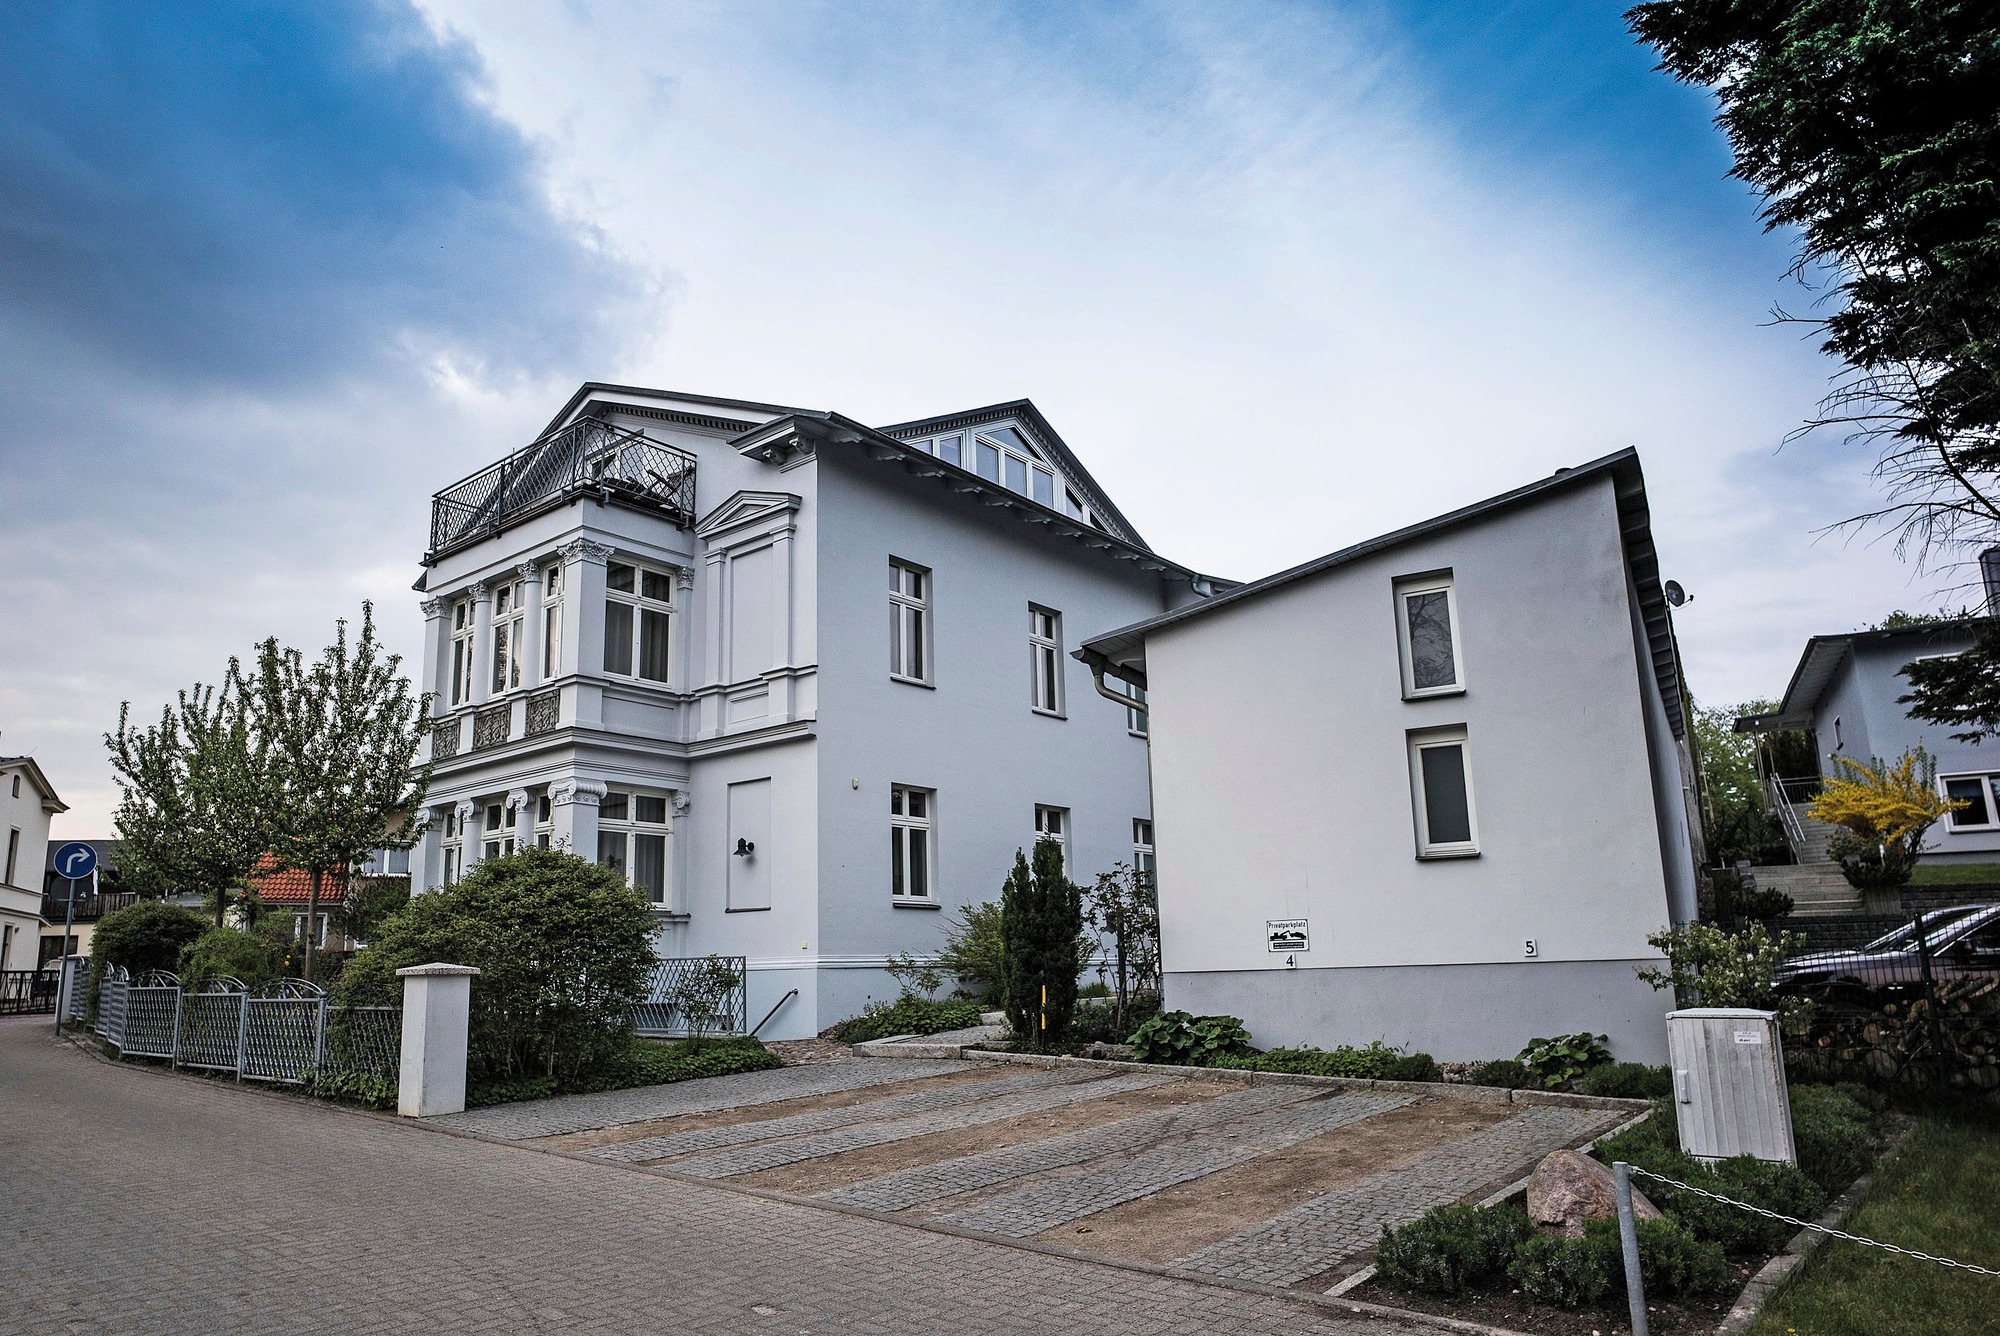 Villa Franz - Mole Ferienwohnung in Mecklenburg Vorpommern